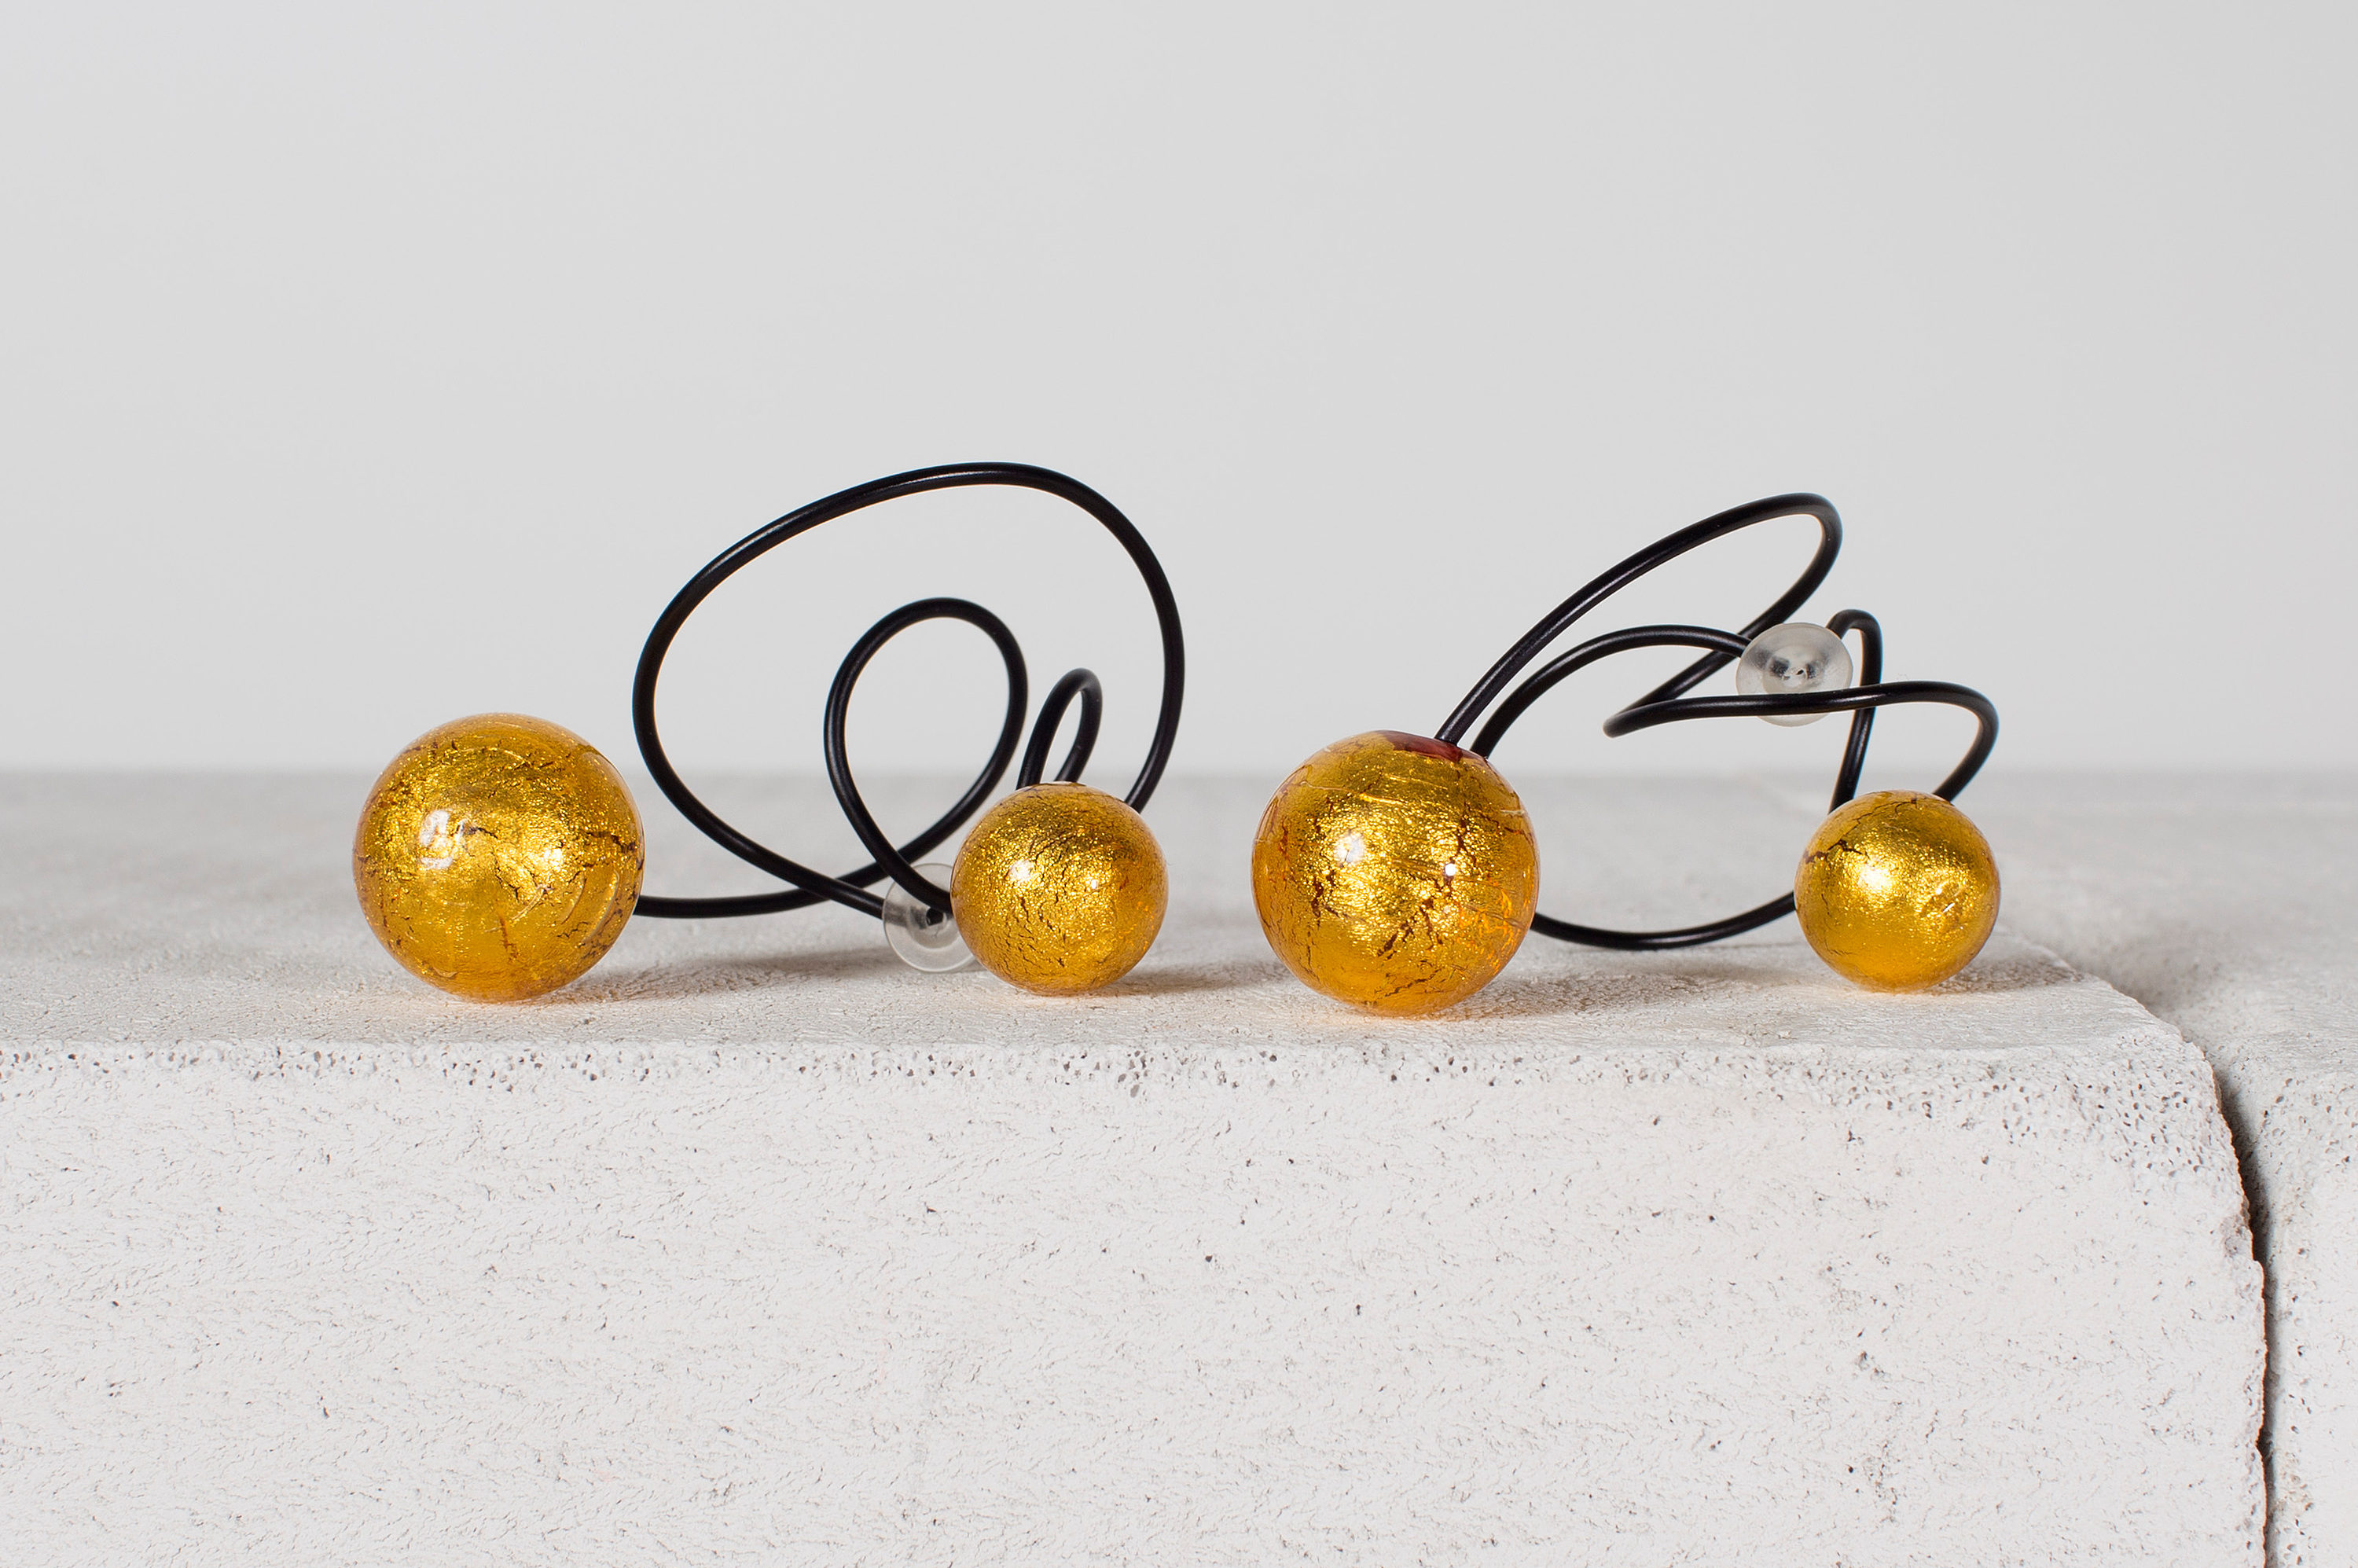 Hecho en titanio negro y perlas de vidrio venecianas con motas de oro de 18 quilates. Foto: bukowskis.com